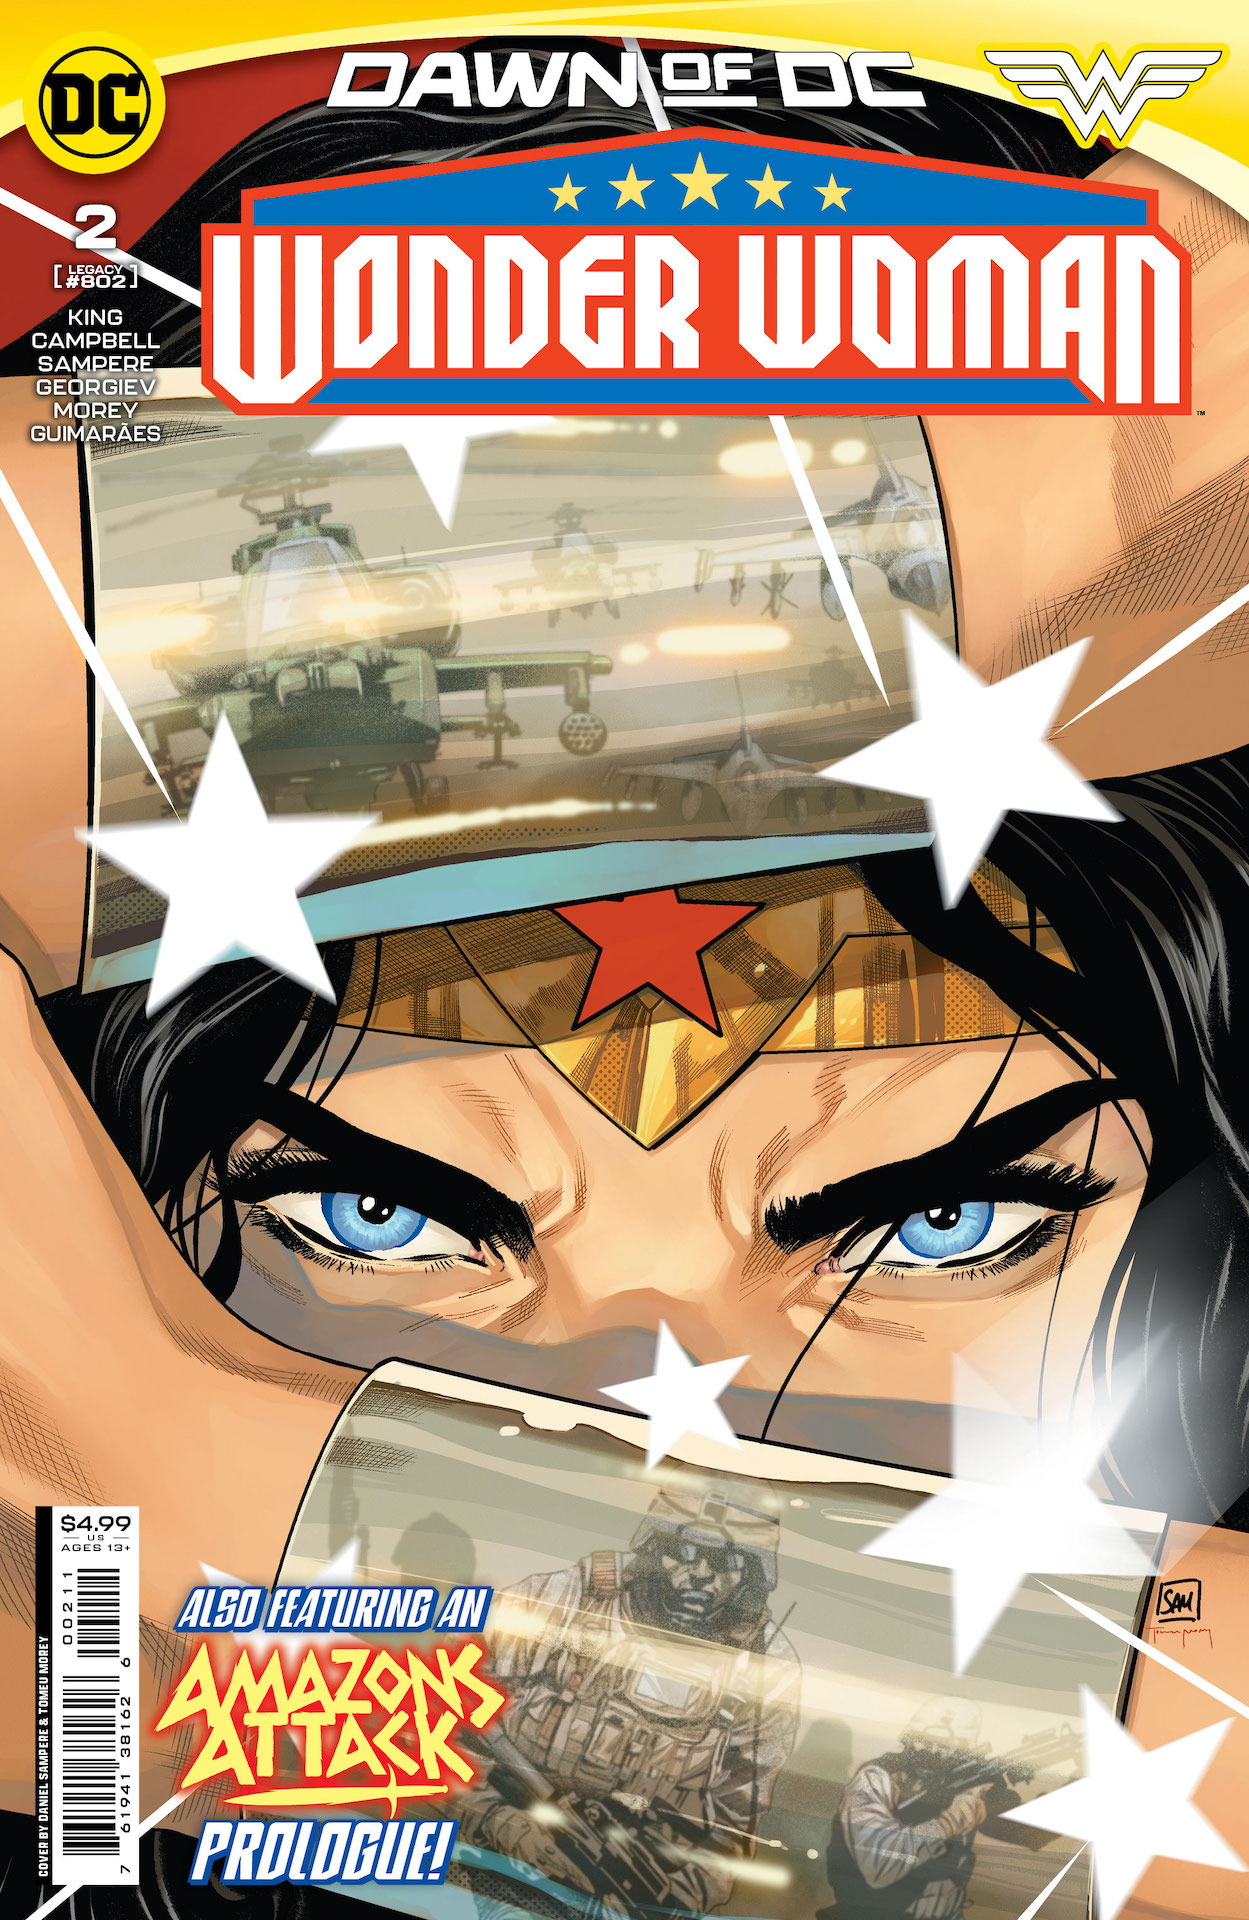 DC Preview: Wonder Woman #2